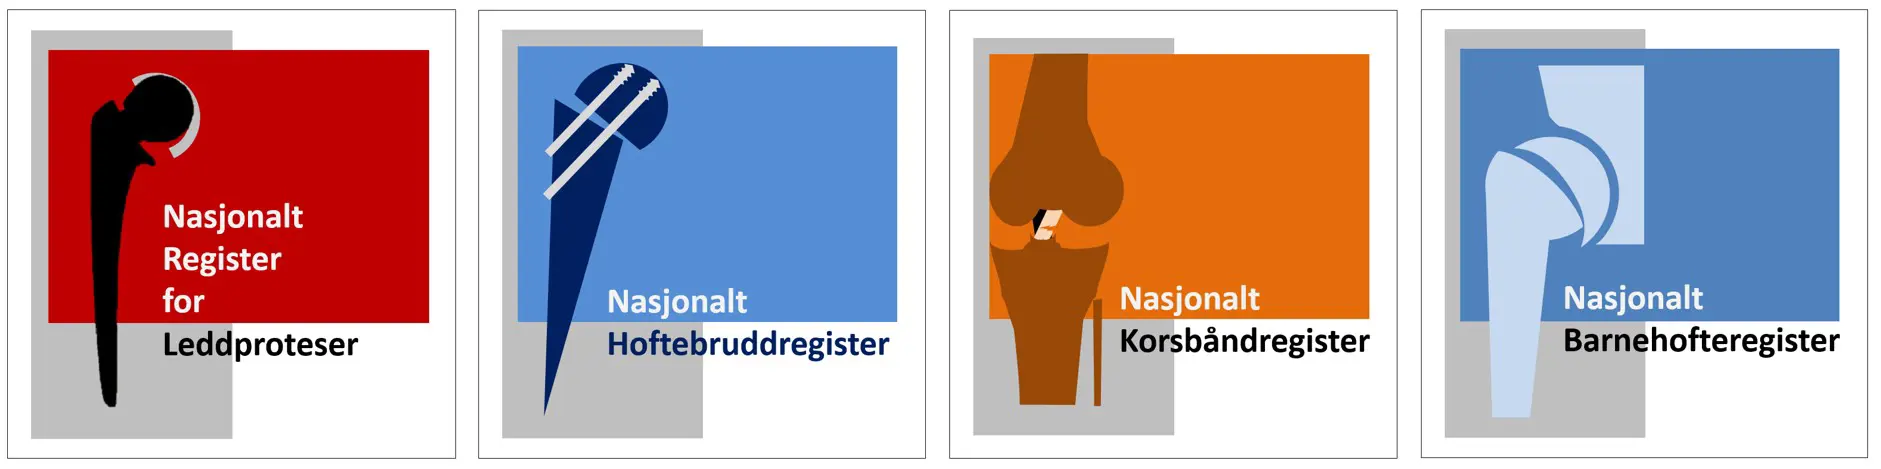 Logo for Nasjonalt register for leddproteser, Nasjonalt hoftebruddregister, Nasjonalt korsbåndregister og Nasjonalt barnehofteregister med ulike grafiske uttrykk og farger.